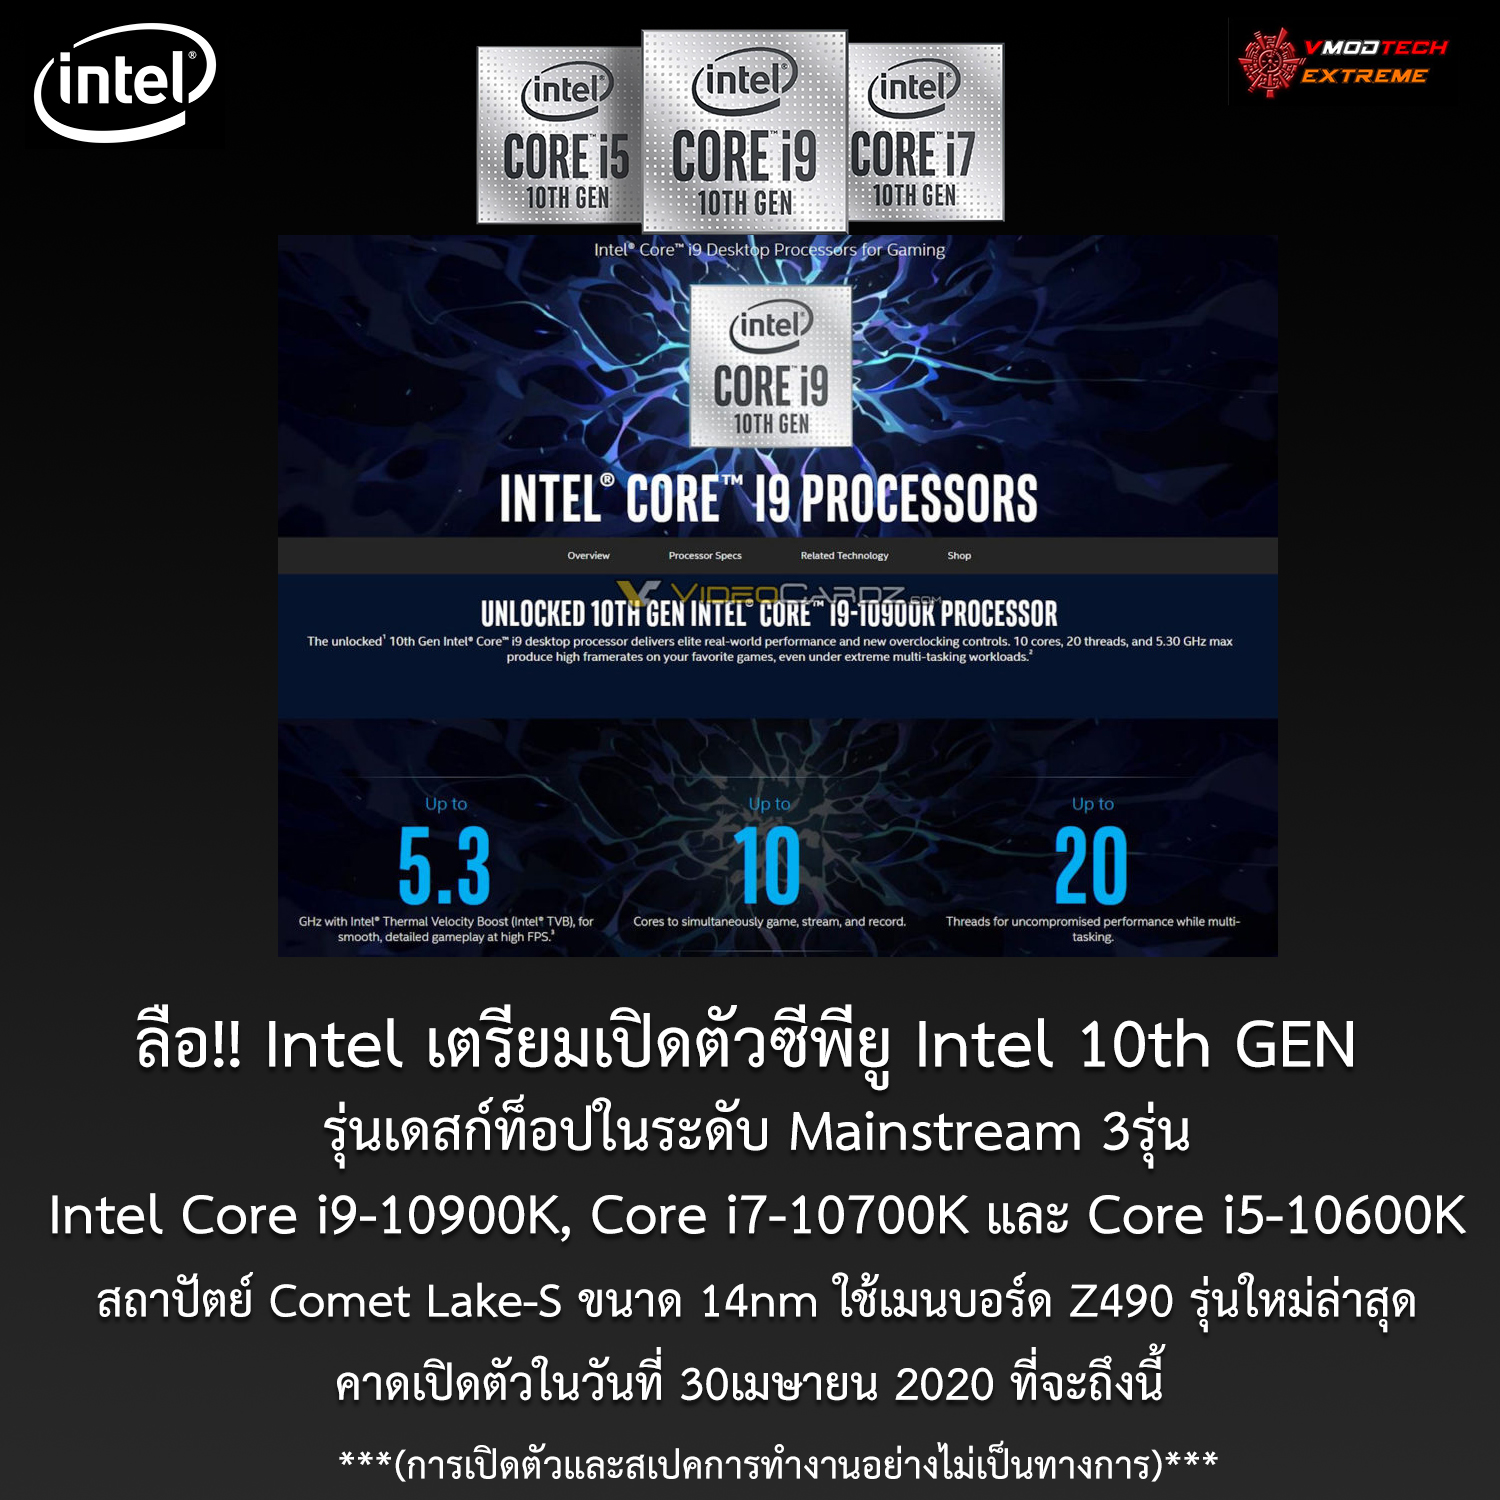 ลือ!! Intel Core i9-10900K, Core i7-10700K และ Core i5-10600K คาดเปิดตัวก่อน 3รุ่นในวันที่ 30เมษายนที่จะถึงนี้